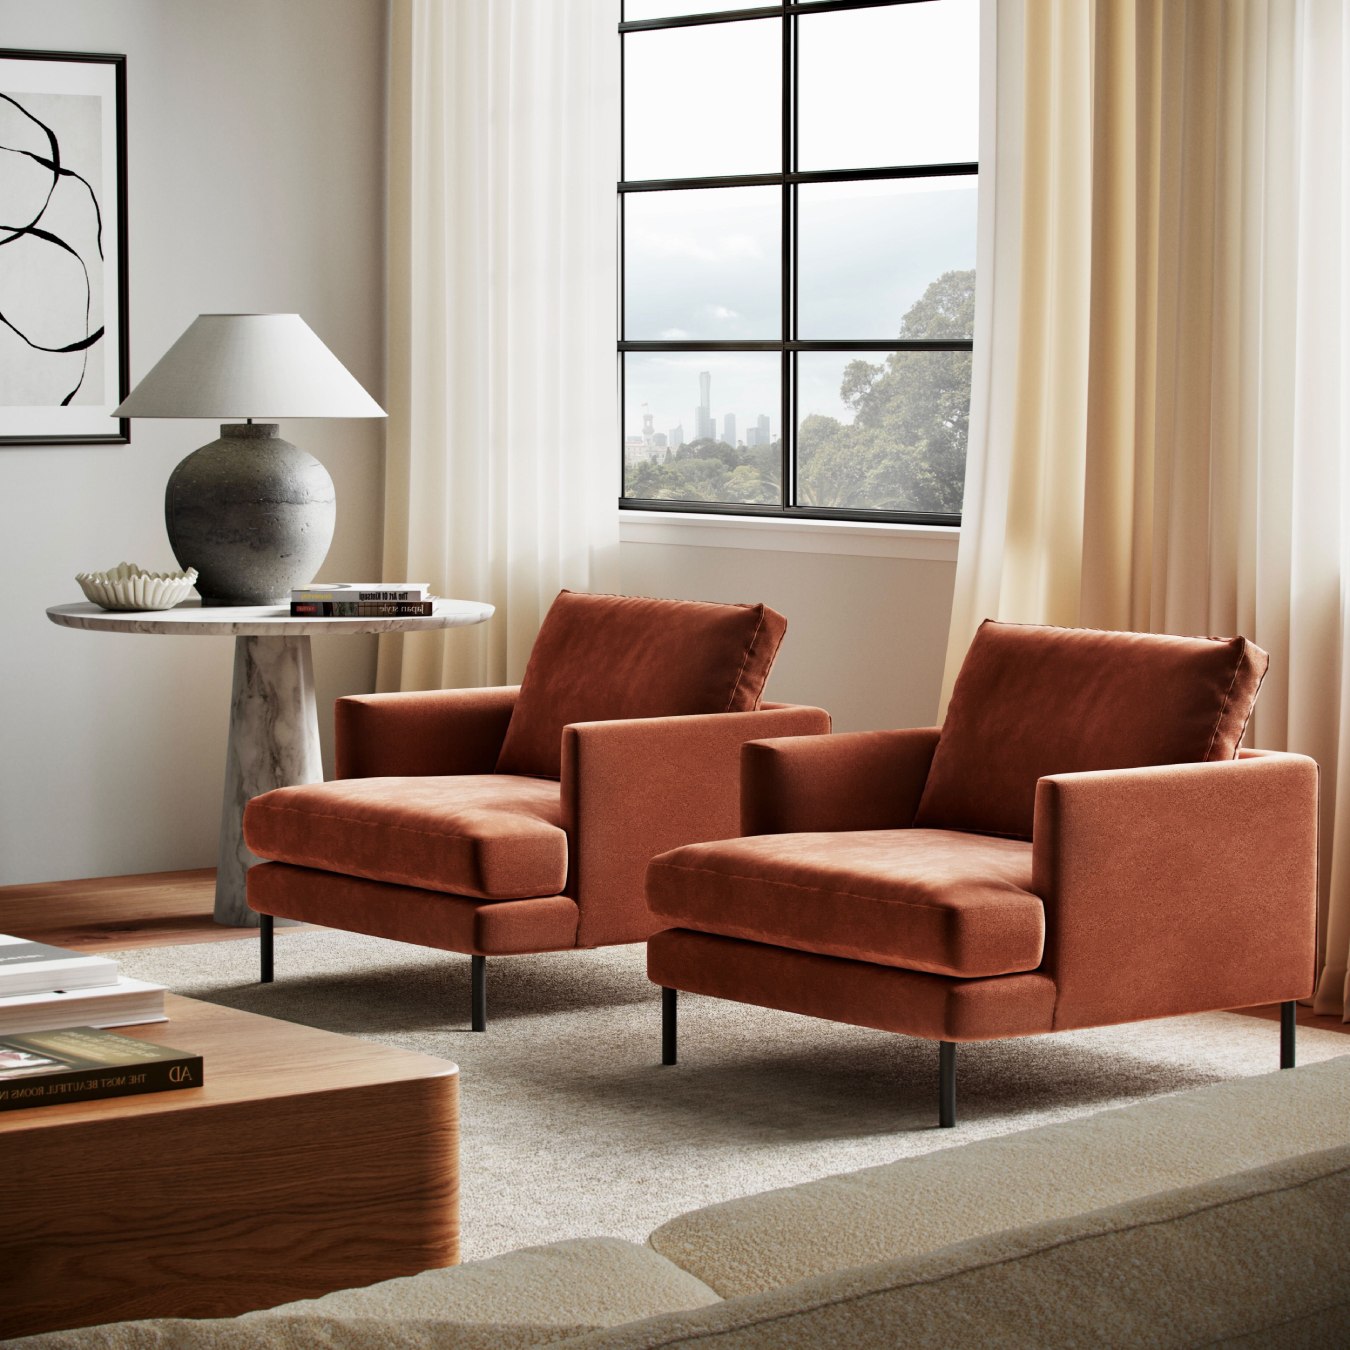 Modern Burnt Orange Velvet Armchair In Modern Apartment